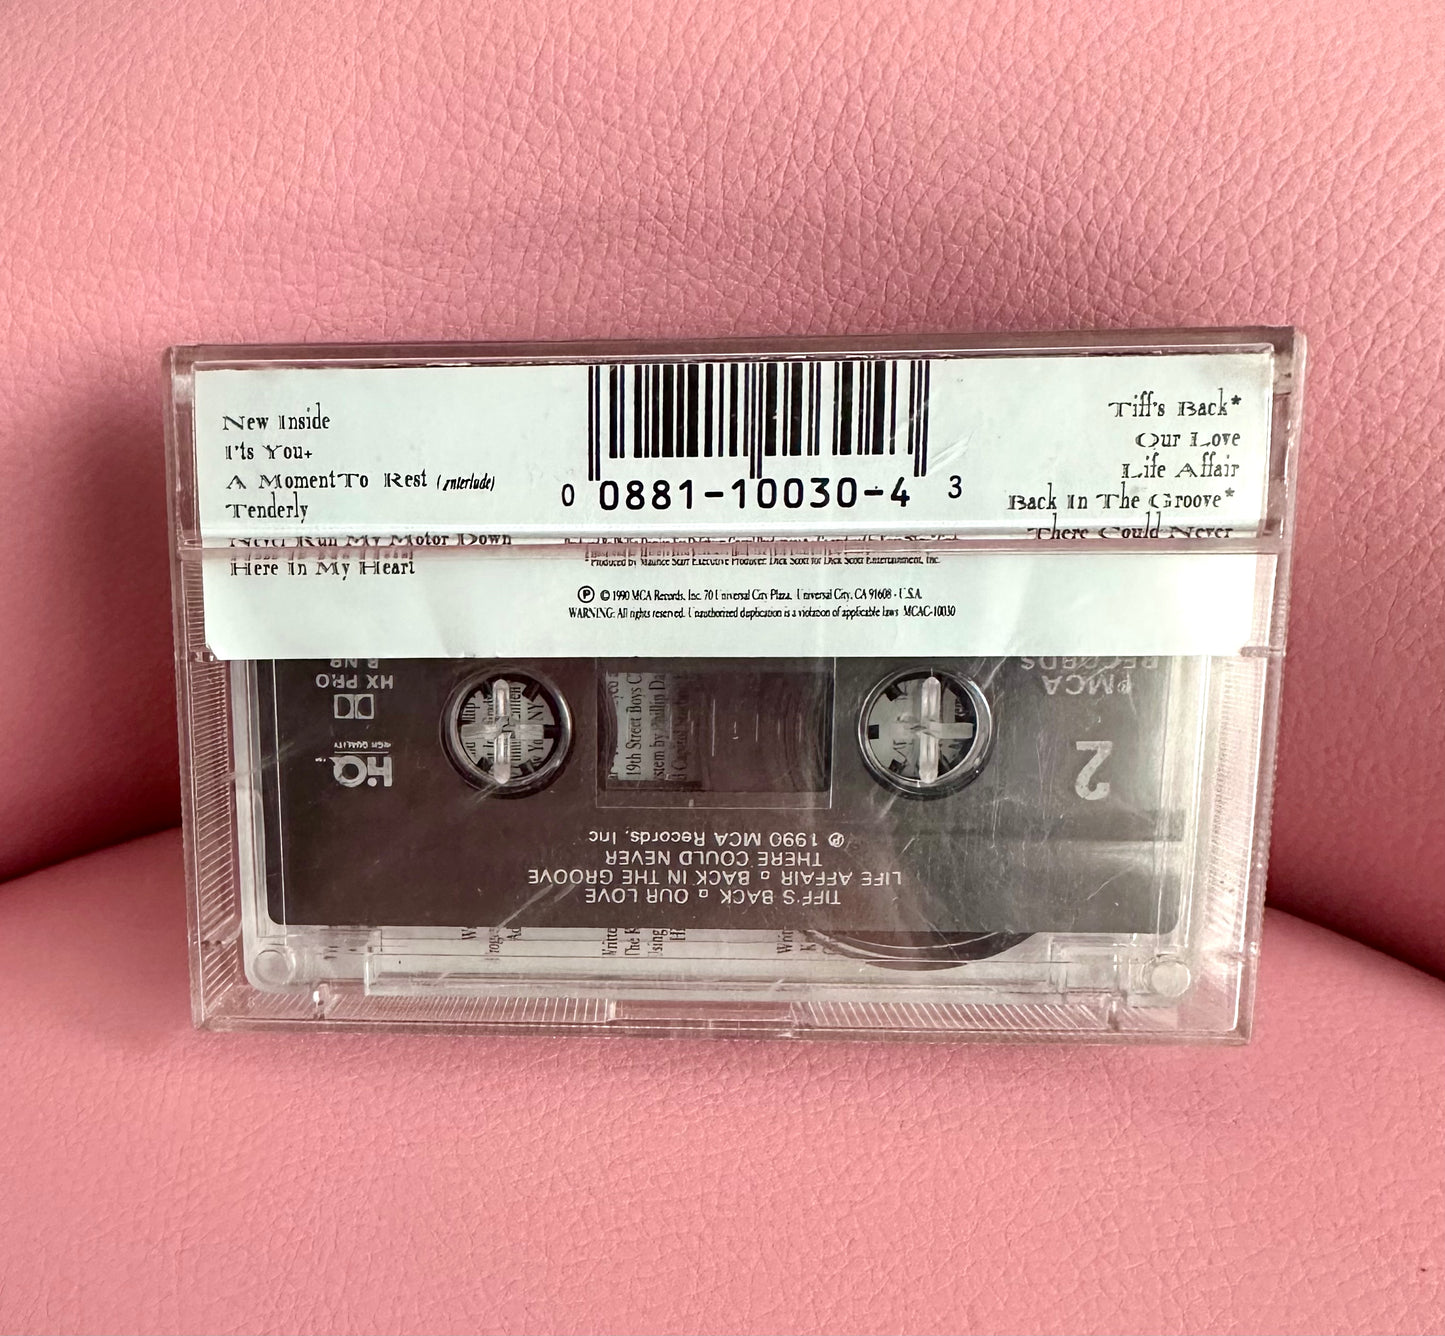 Tiffany New Inside Cassette Tape